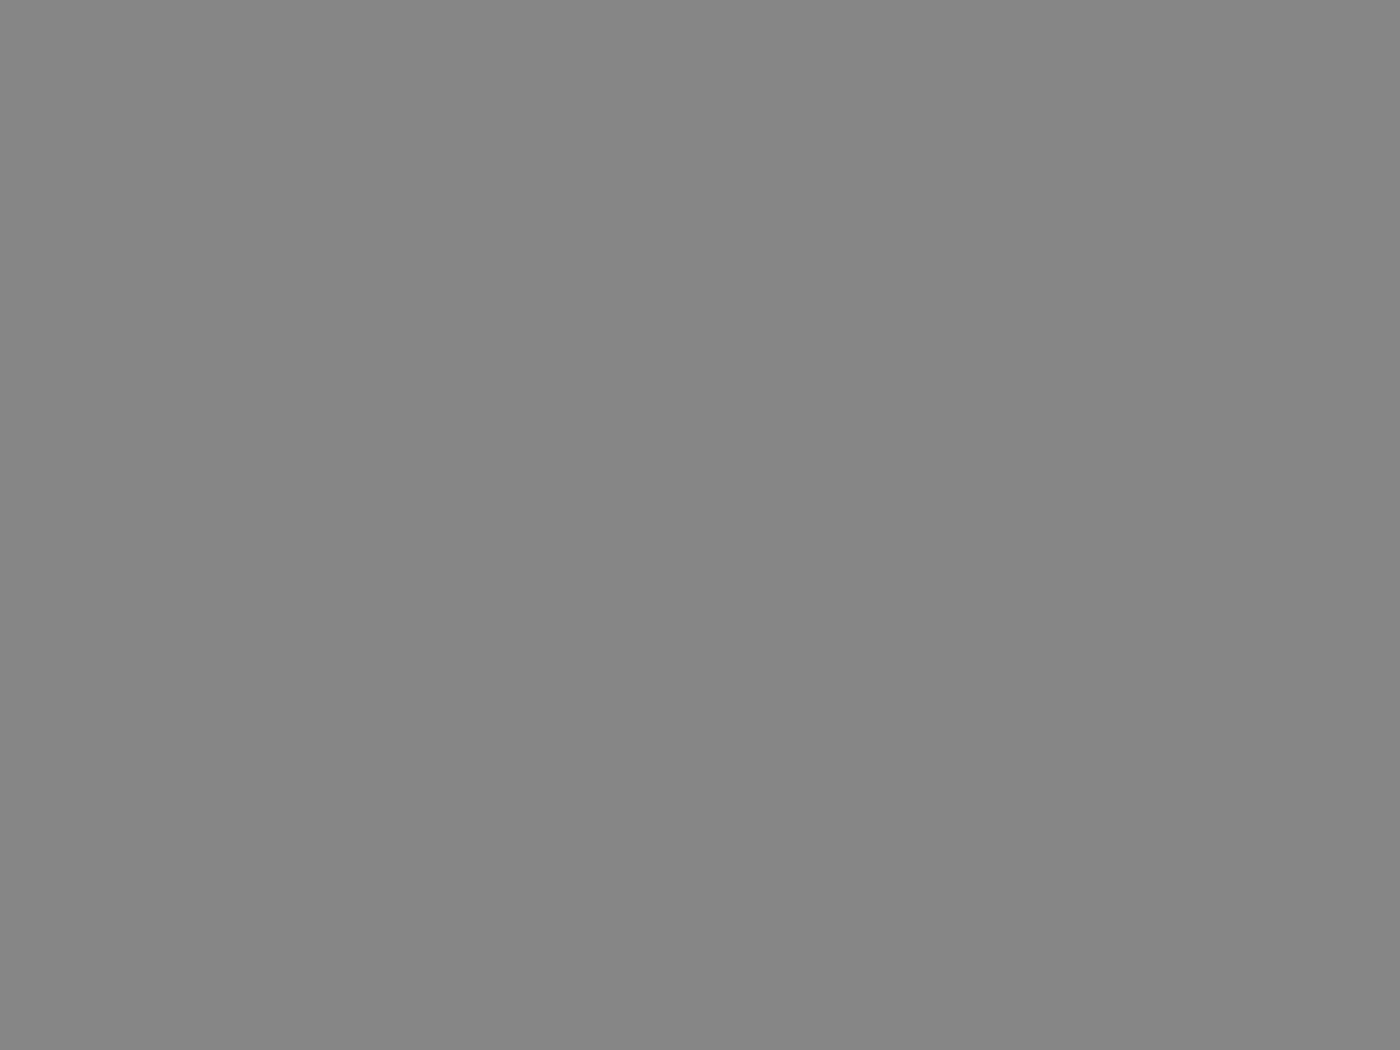 Передвижение Саввинского подворья по плану реконструкции улицы Горького (сейчас Тверская). Москва, 1939 год. Фотография: ИТАР–ТАСС